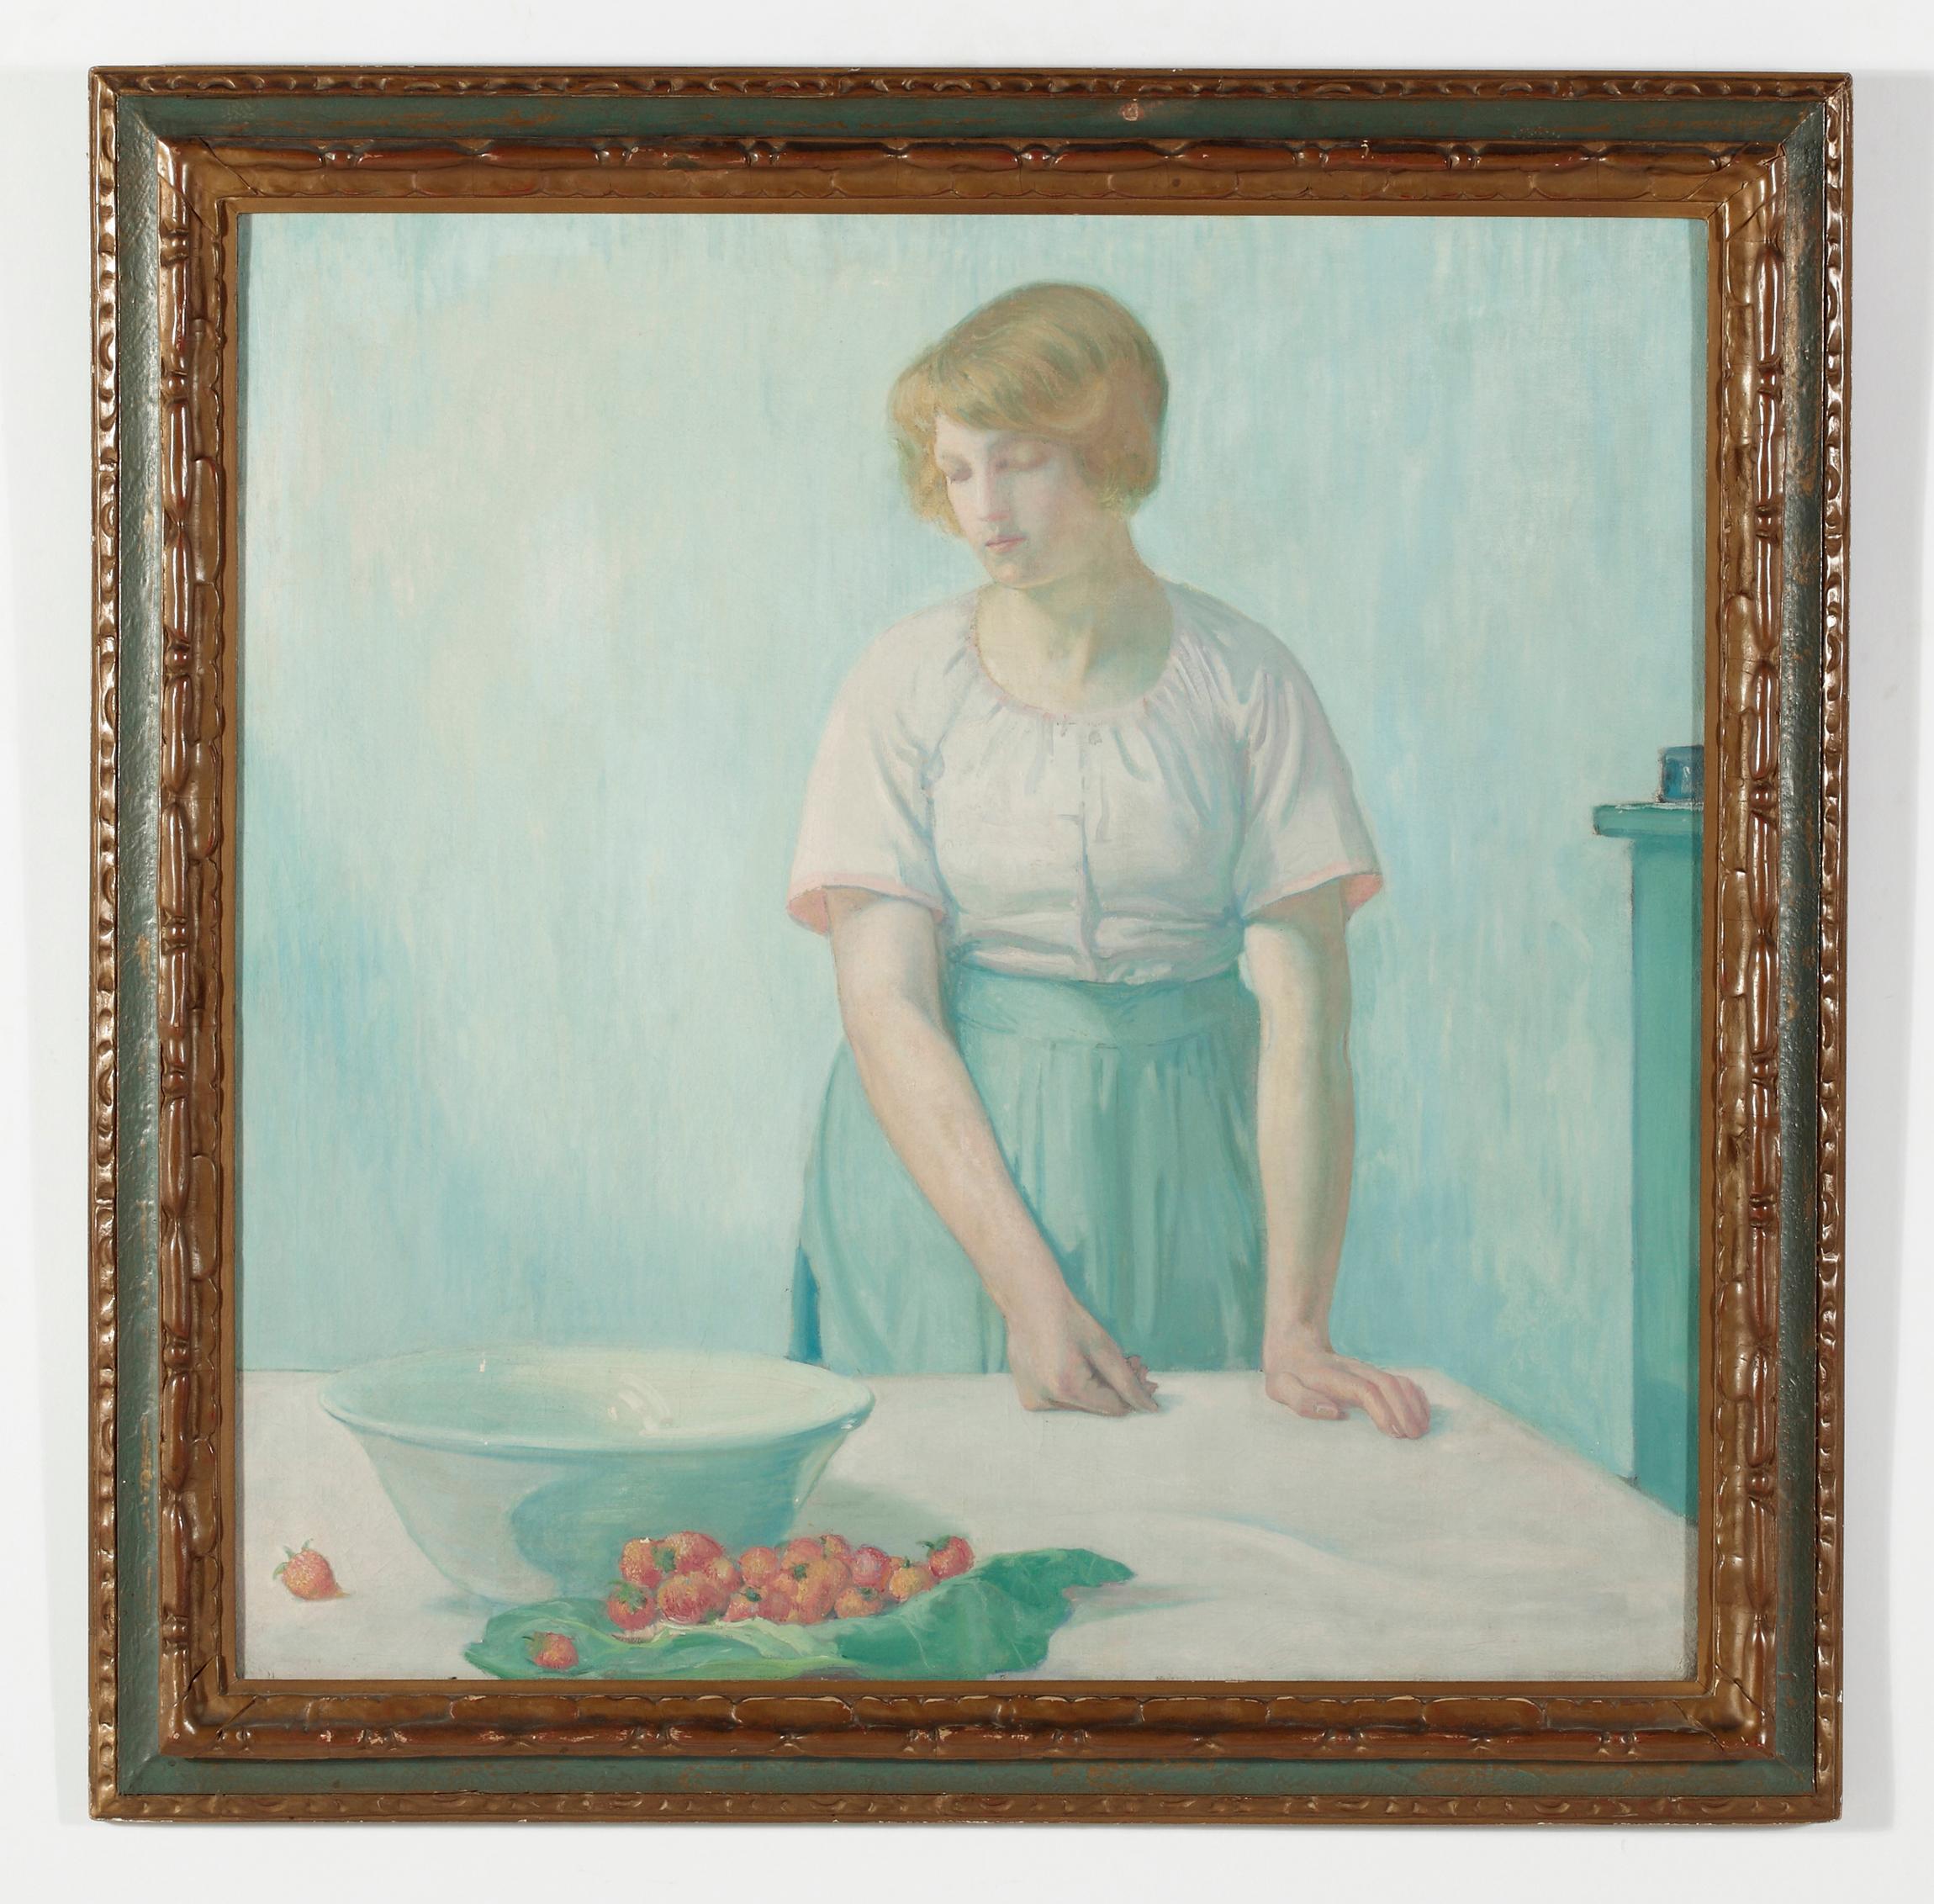 Woman mit Erdbeerbeeren – Painting von Myron Barlow